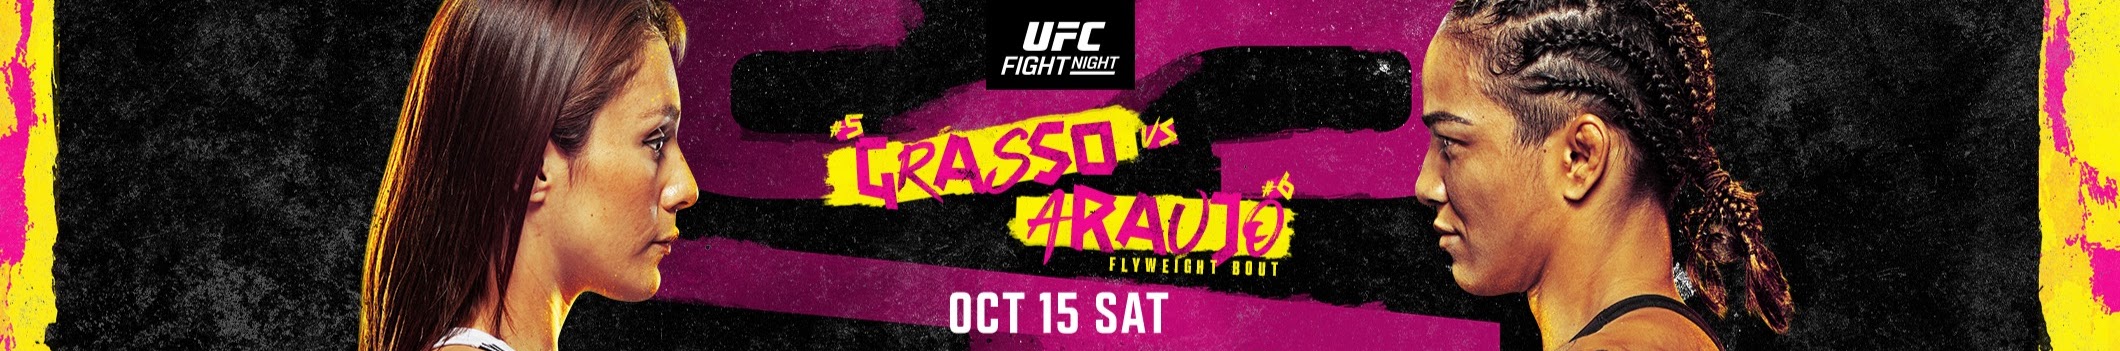 UFC on ESPN+ 70 - Las Vegas - Poster et affiche